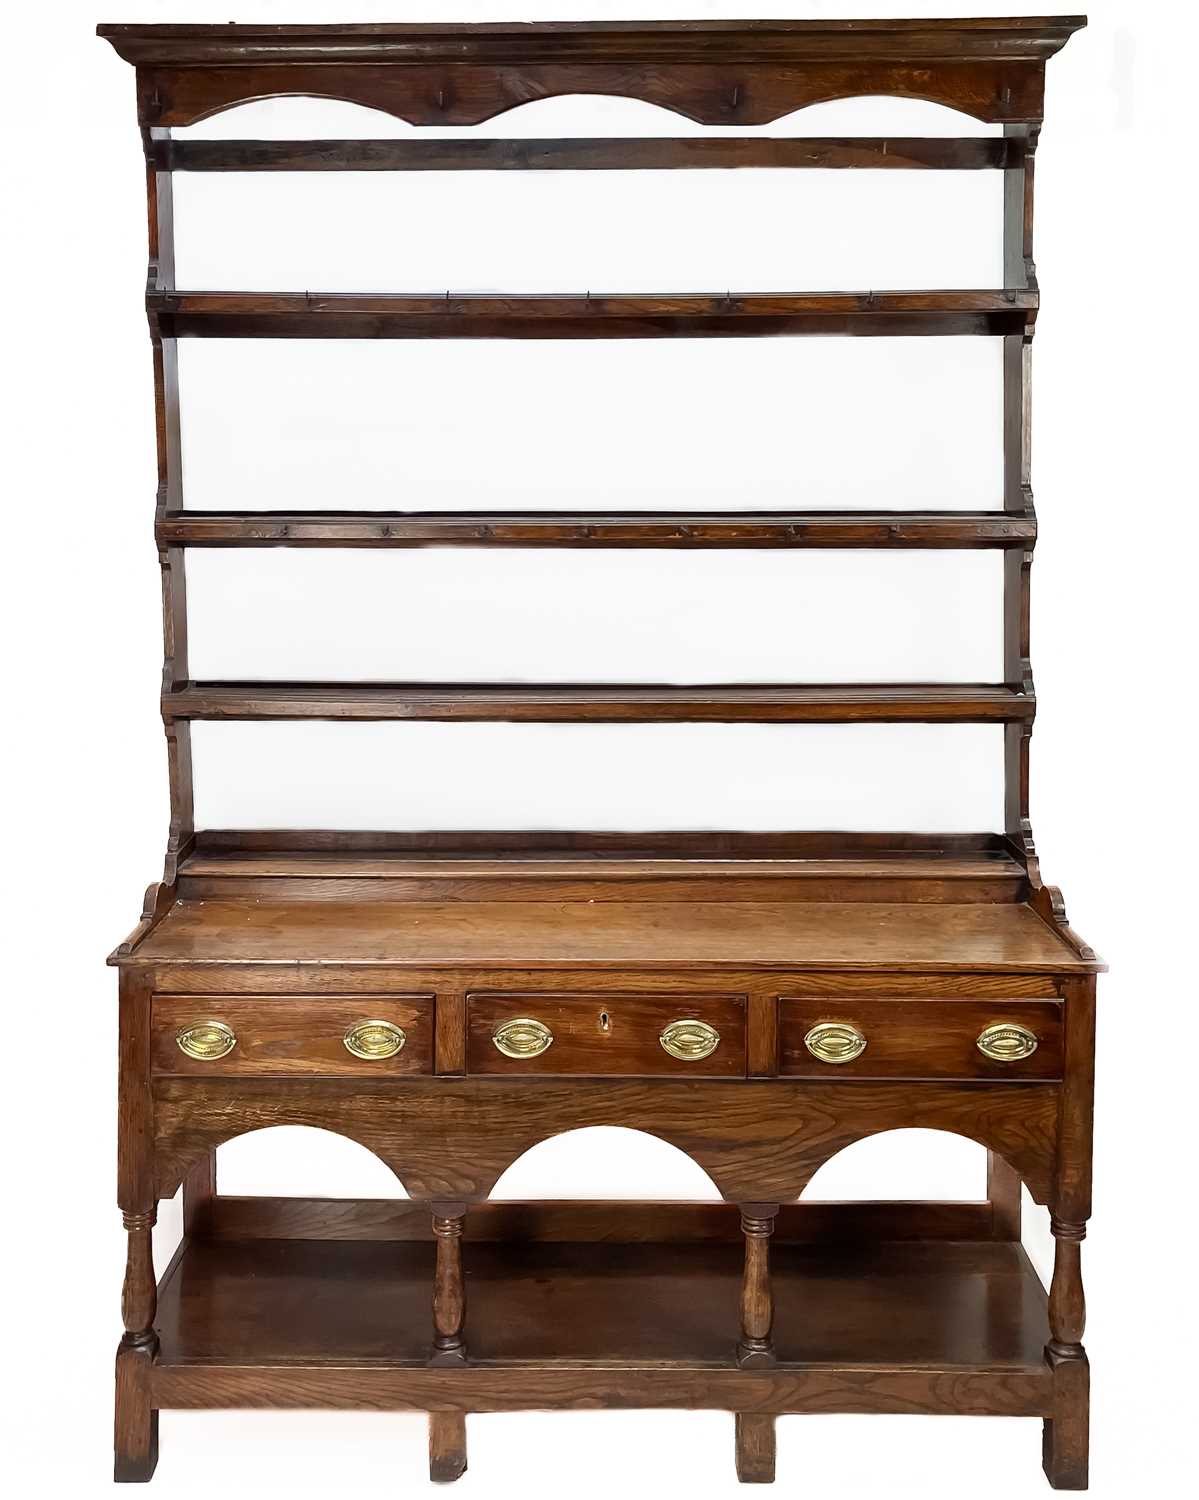 A George III oak dresser.